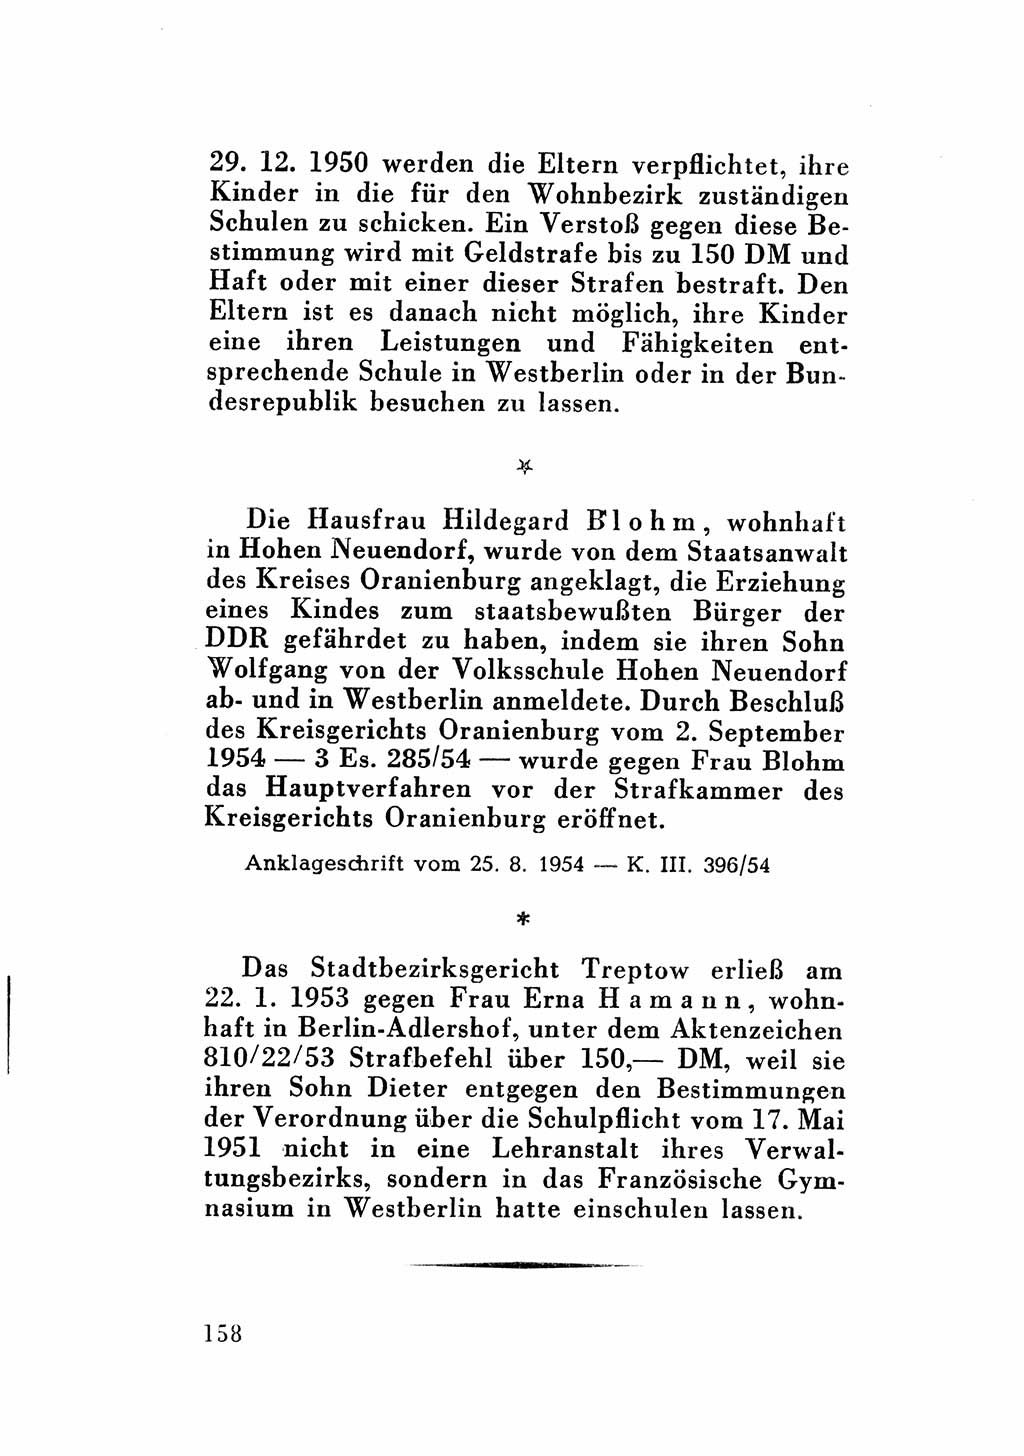 Katalog des Unrechts, Untersuchungsausschuß Freiheitlicher Juristen (UfJ) [Bundesrepublik Deutschland (BRD)] 1956, Seite 158 (Kat. UnR. UfJ BRD 1956, S. 158)